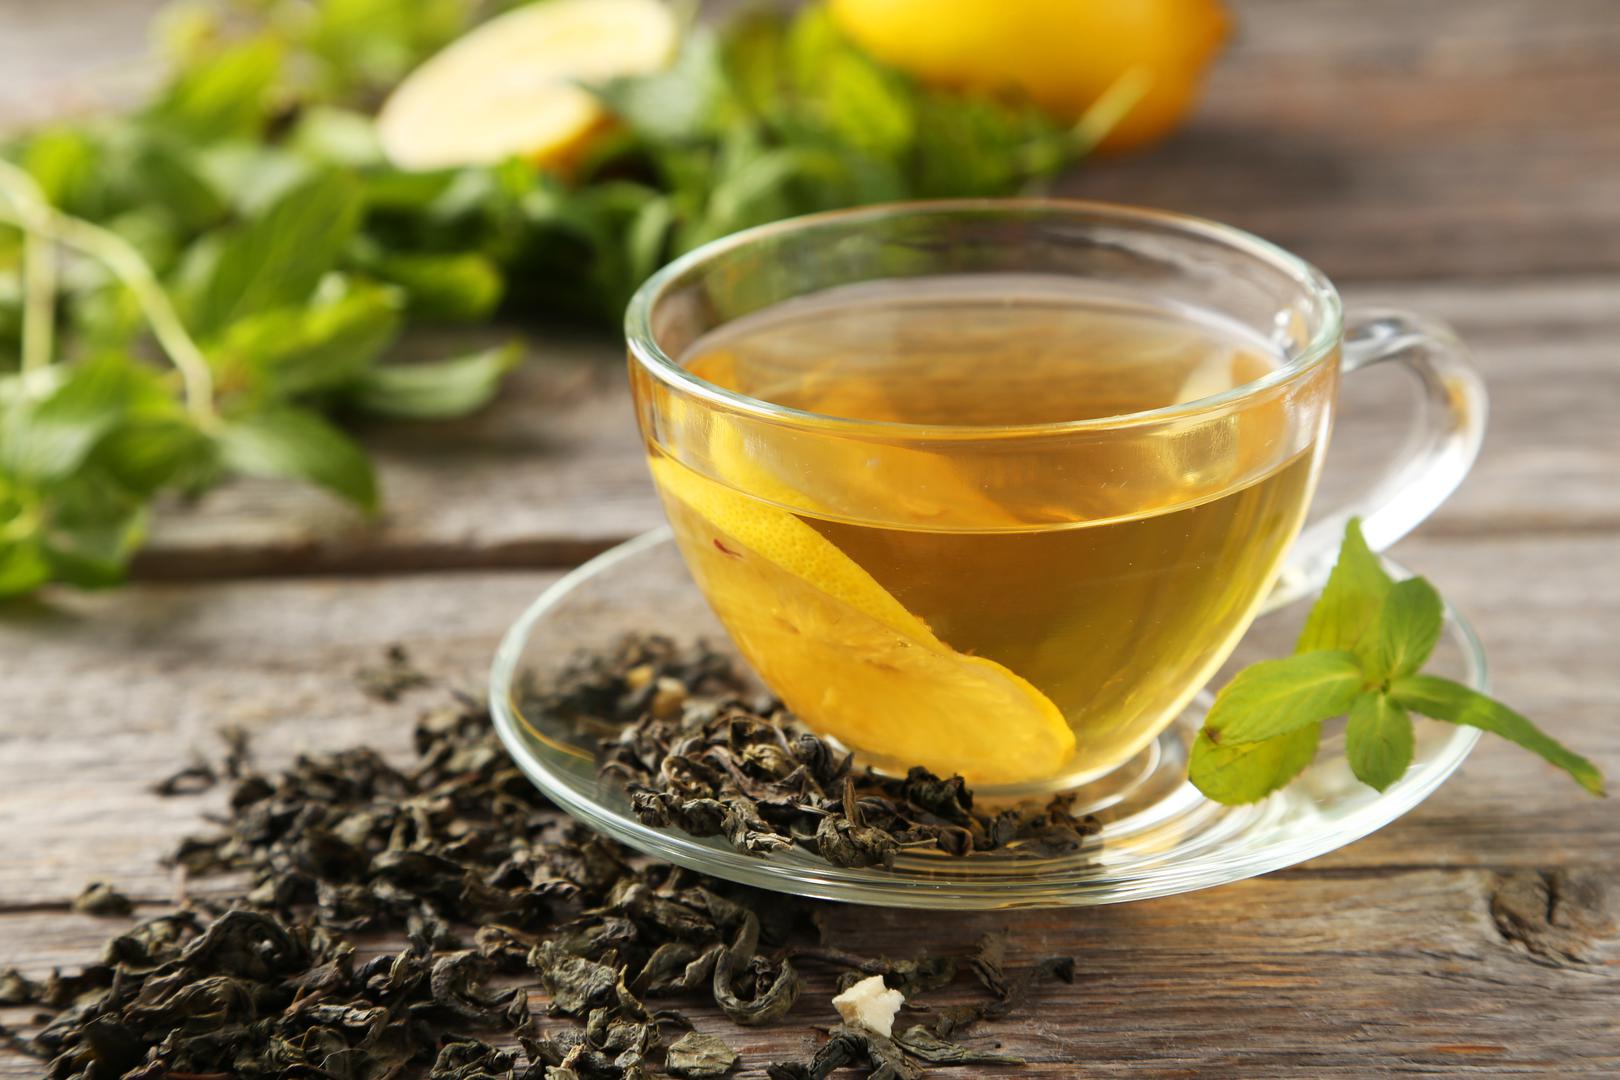 5. Uključivanje zelenog čaja u vašu prehranu također može sniziti LDL kolesterol i ukupni kolesterol. Bez obzira je li vruć ili leden, uključivanje zelenog čaja u vašu prehranu jedna je nevjerojatno jednostavna, a korisna stvar ako imate obiteljsku povijest visokog kolesterola.